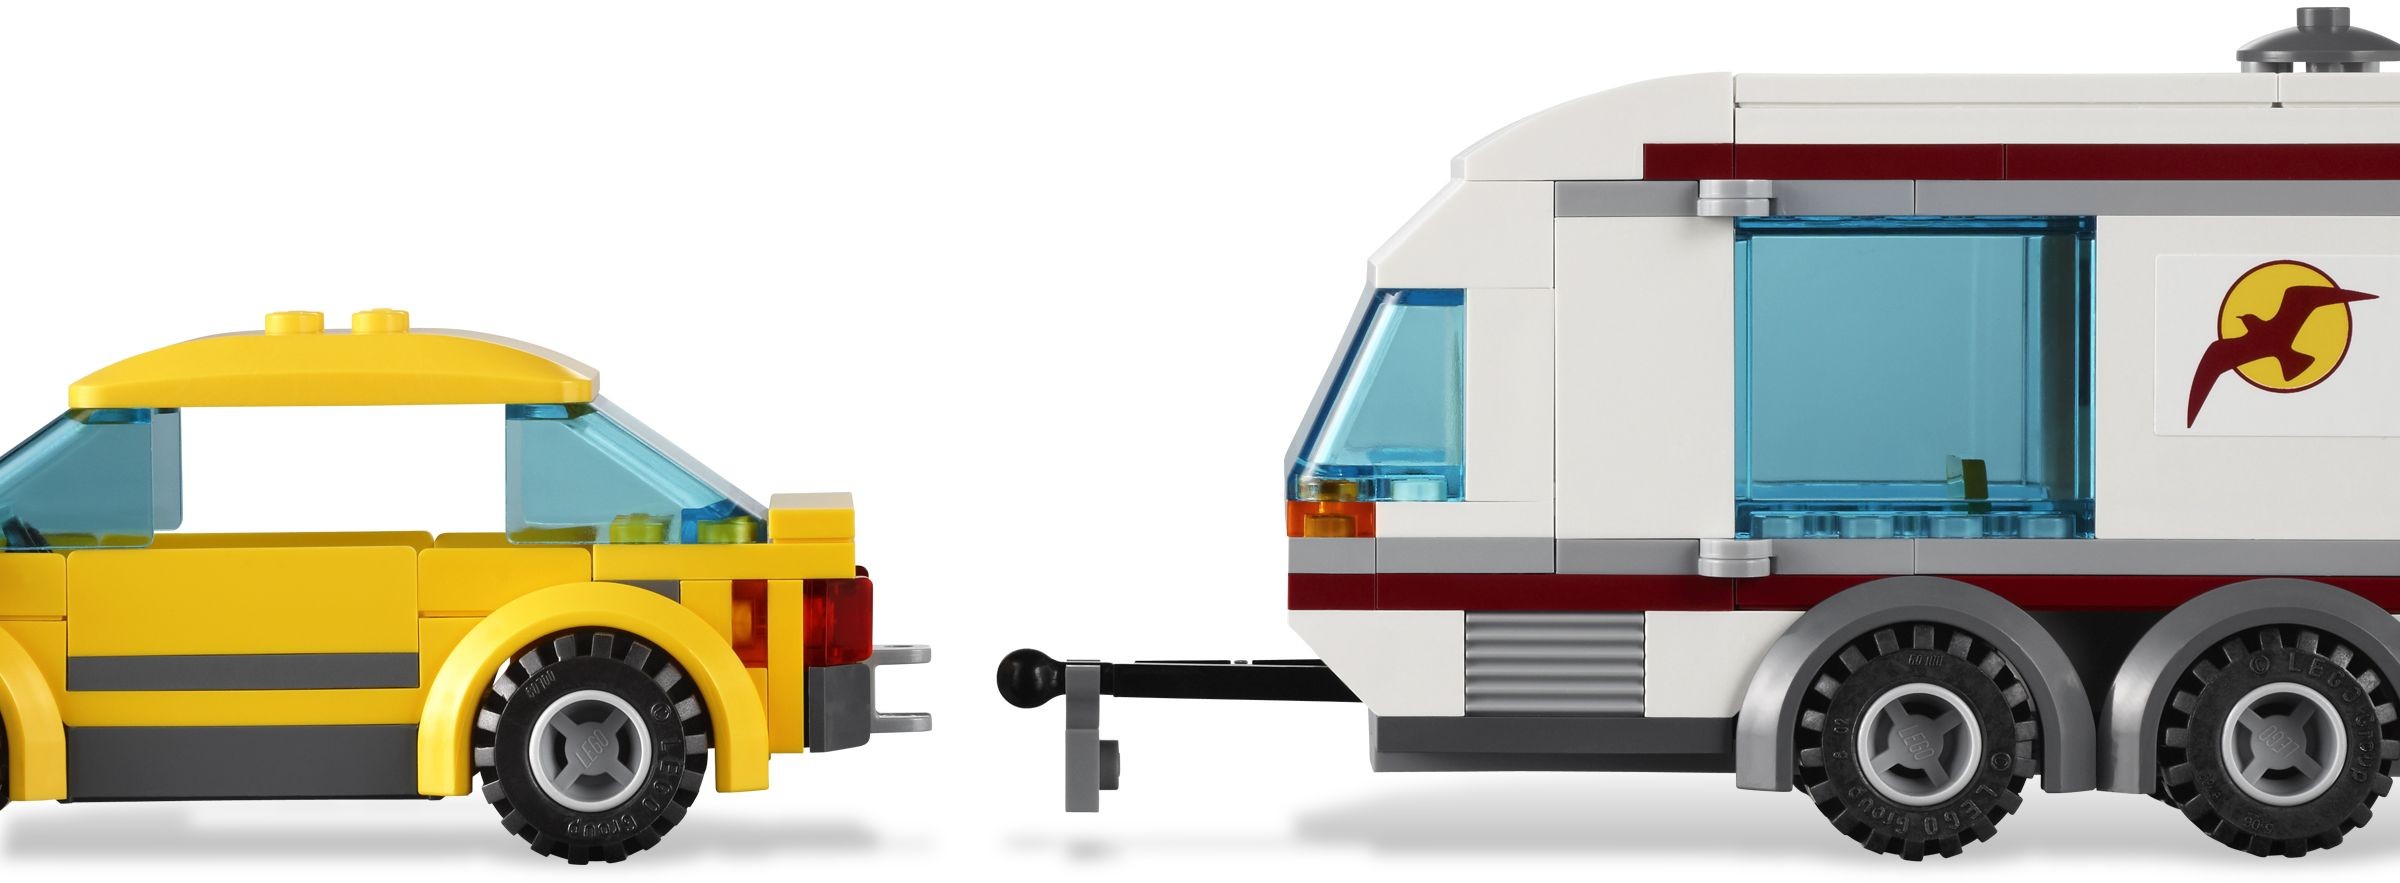 LEGO CITY 4435 Samochód z Przyczepą Kempingową HiT